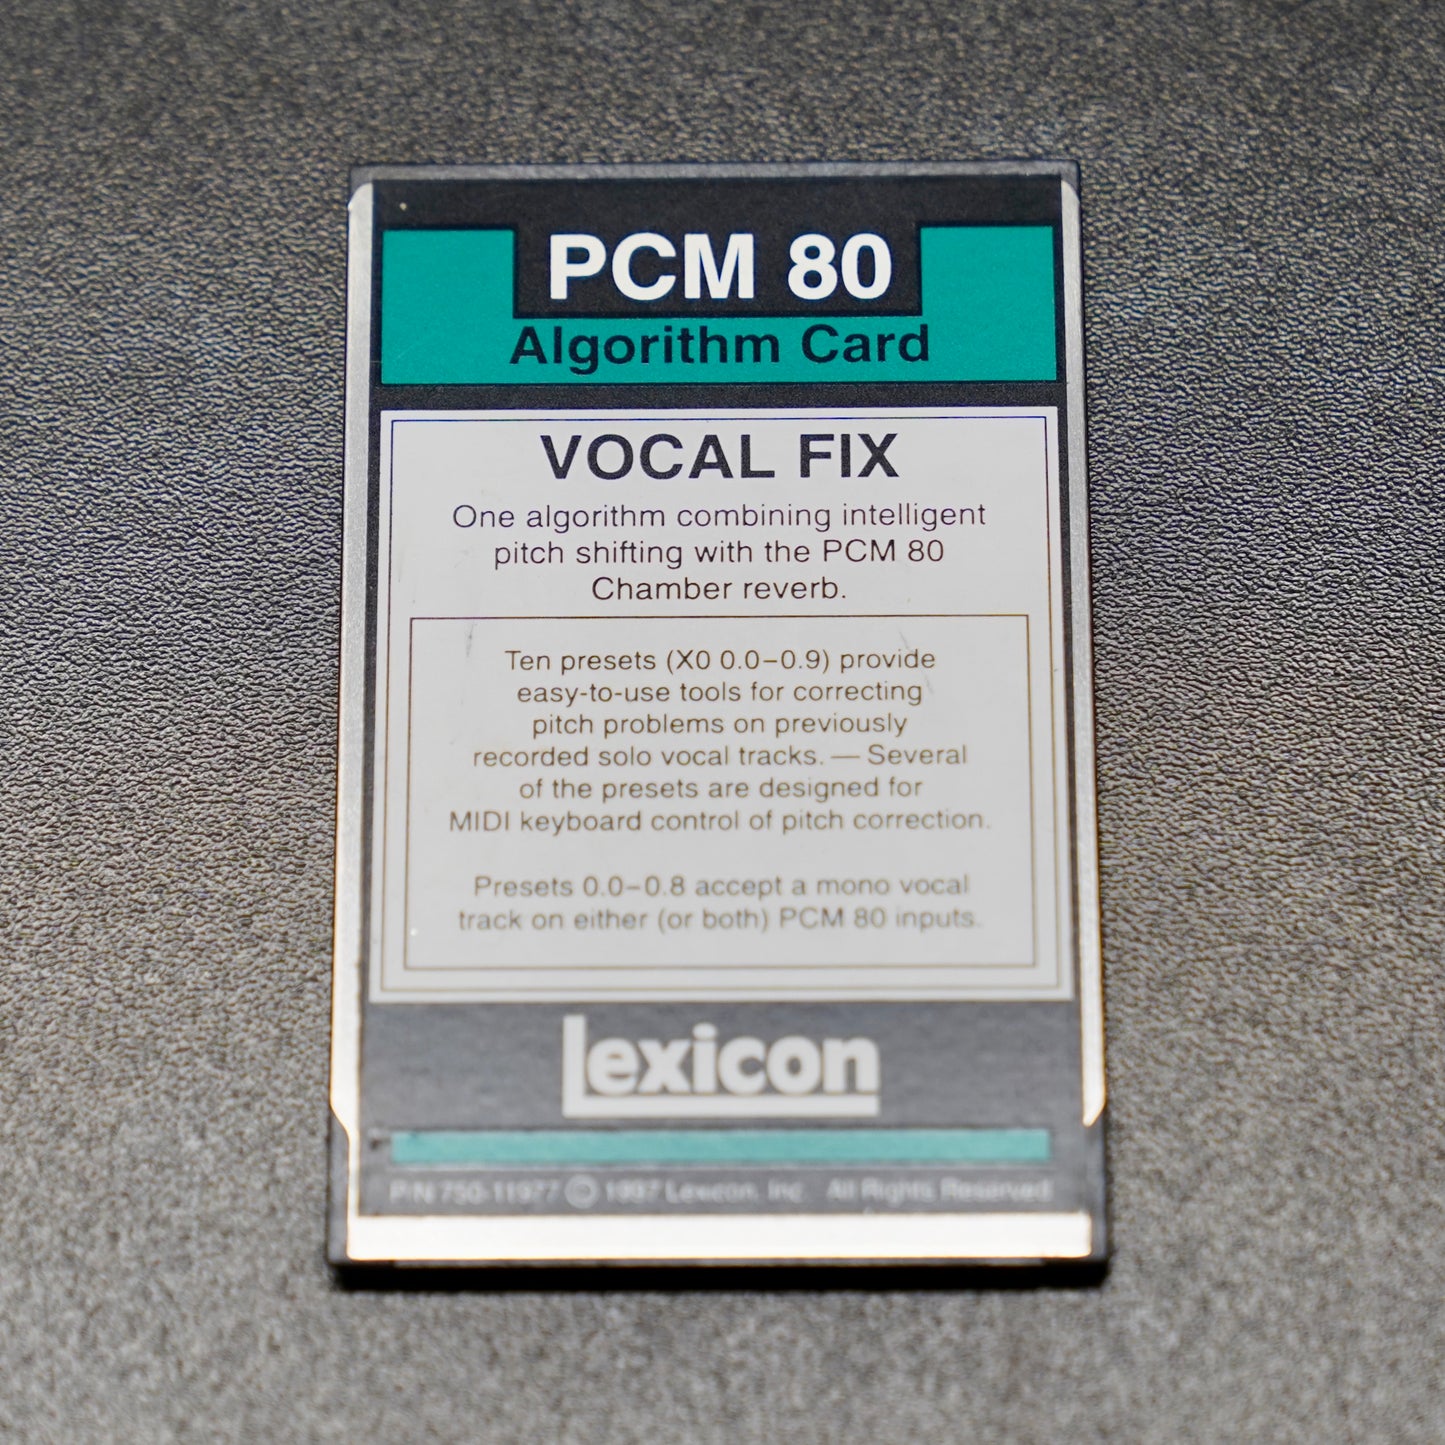 Lexicon PCM80 Vocal Fix Algorithm Card